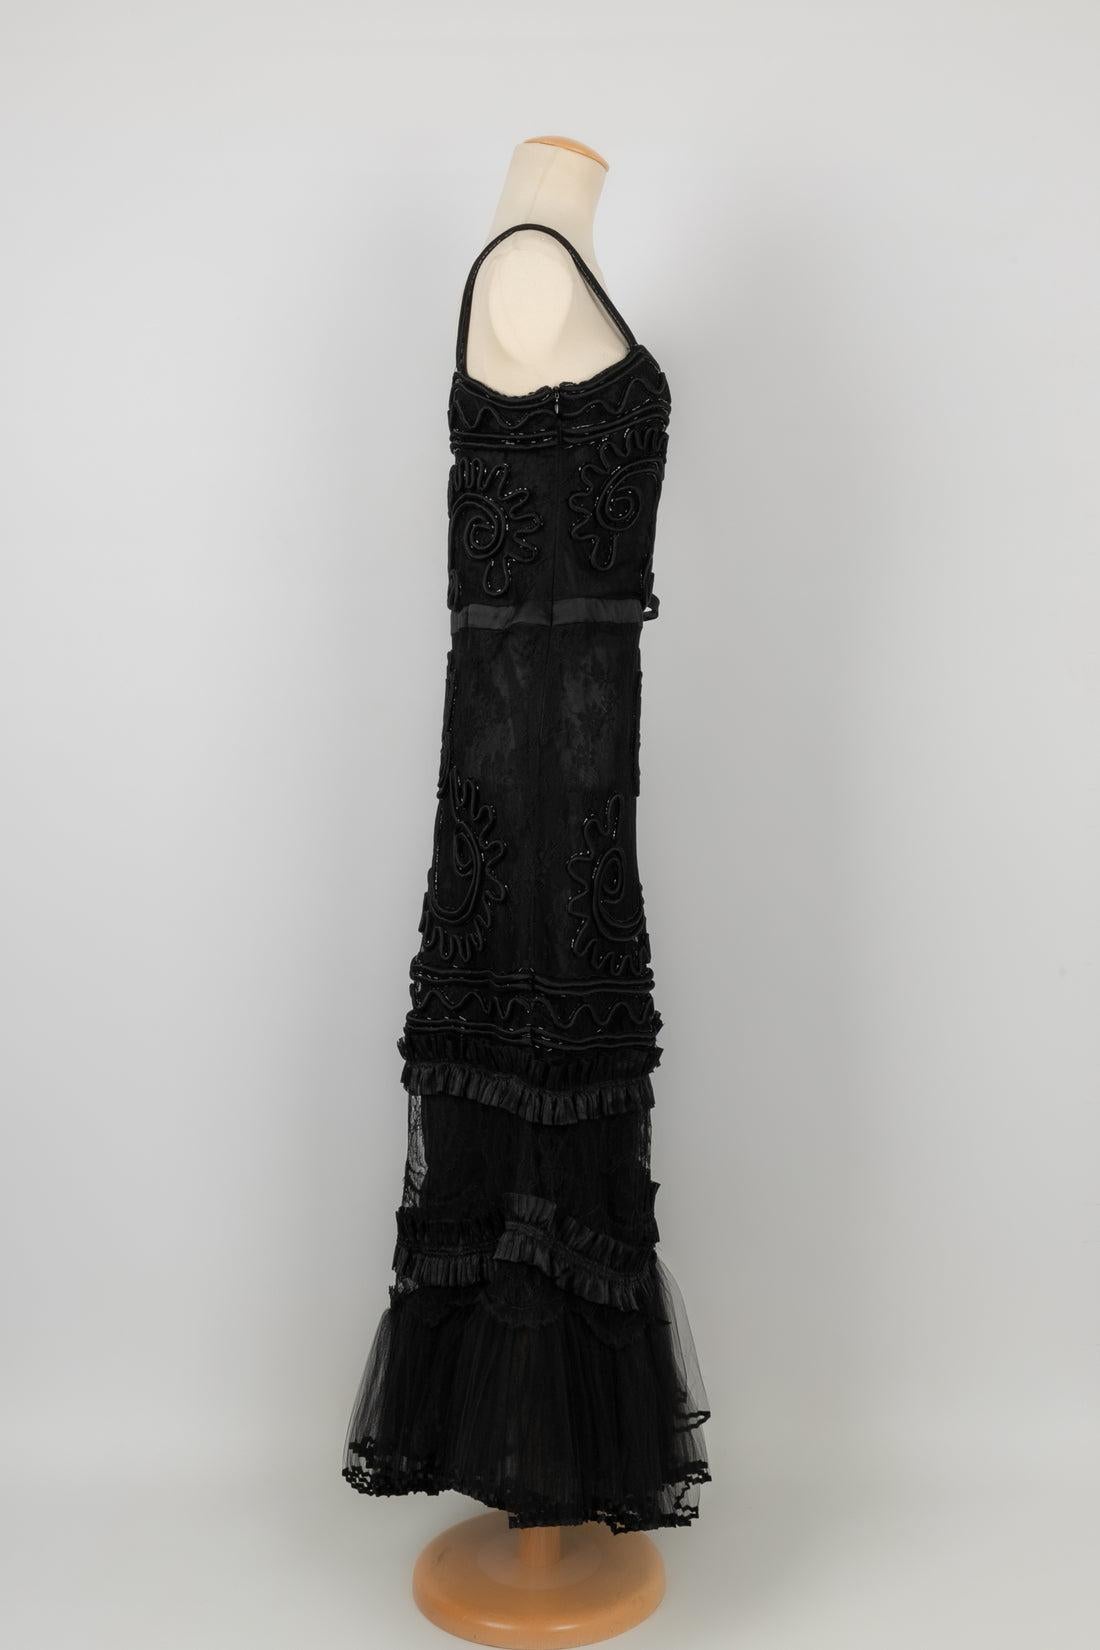 Women's Valentino Black Lace Dress, circa 2010 For Sale